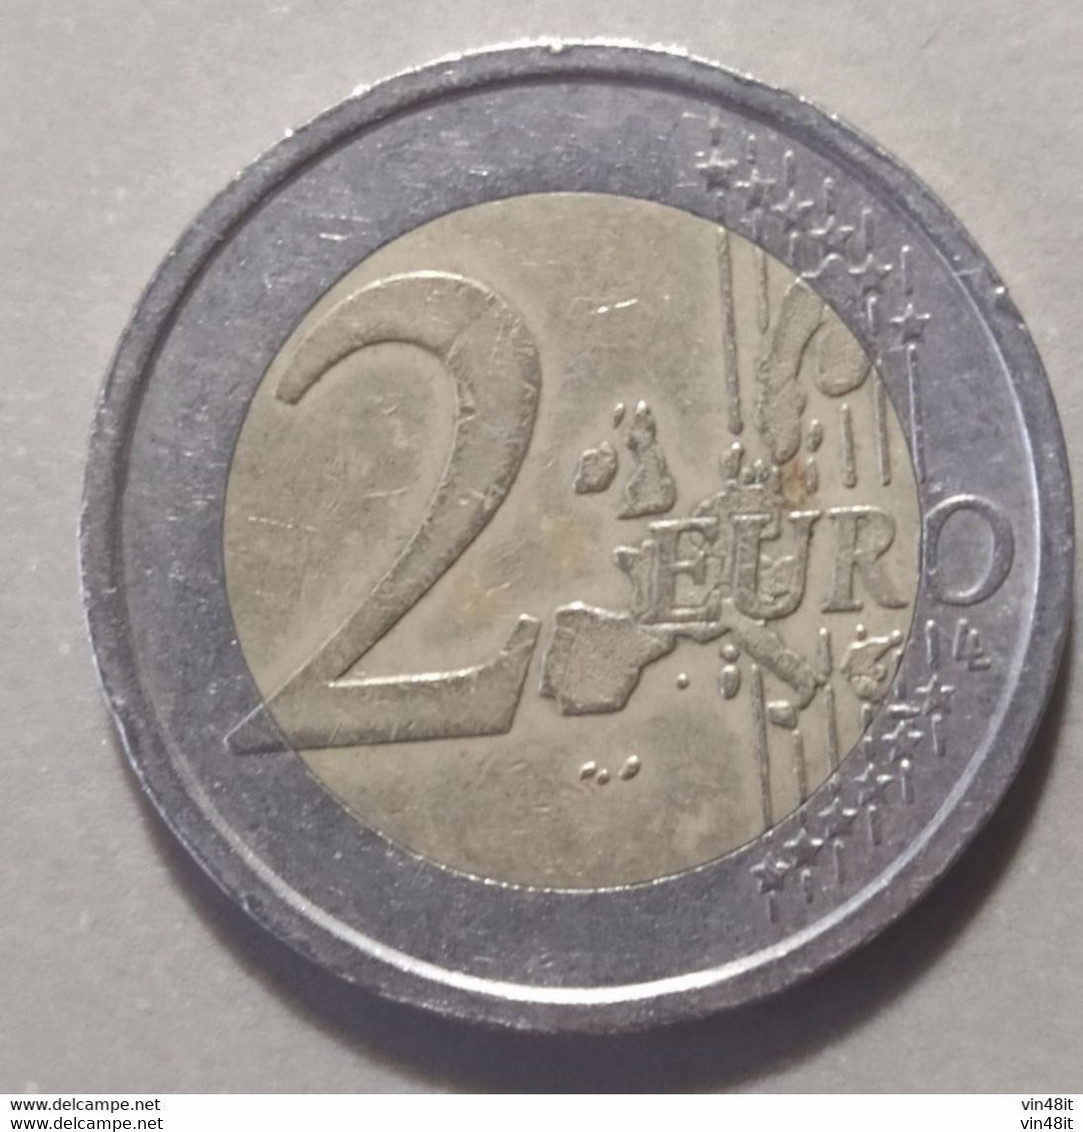 2008   - GERMANIA   - MONETA IN EURO  - DEL VALORE DI  2,00 EURO - USATA - Allemagne